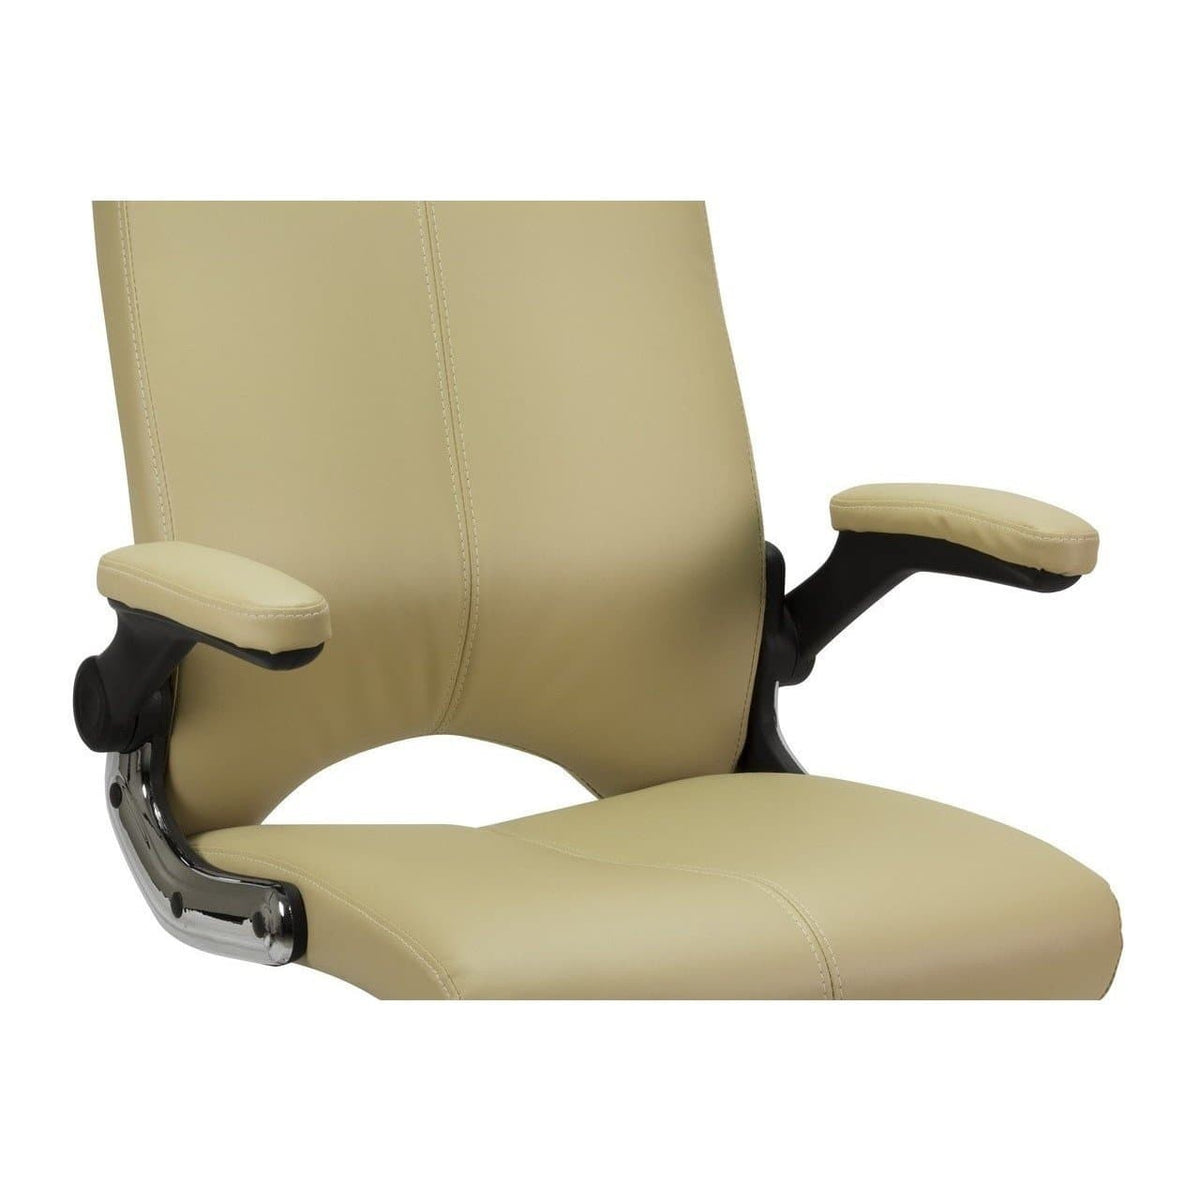 Mayakoba Mayakoba Versa Customer Chair Customer &amp; Waiting Chairs - ChairsThatGive